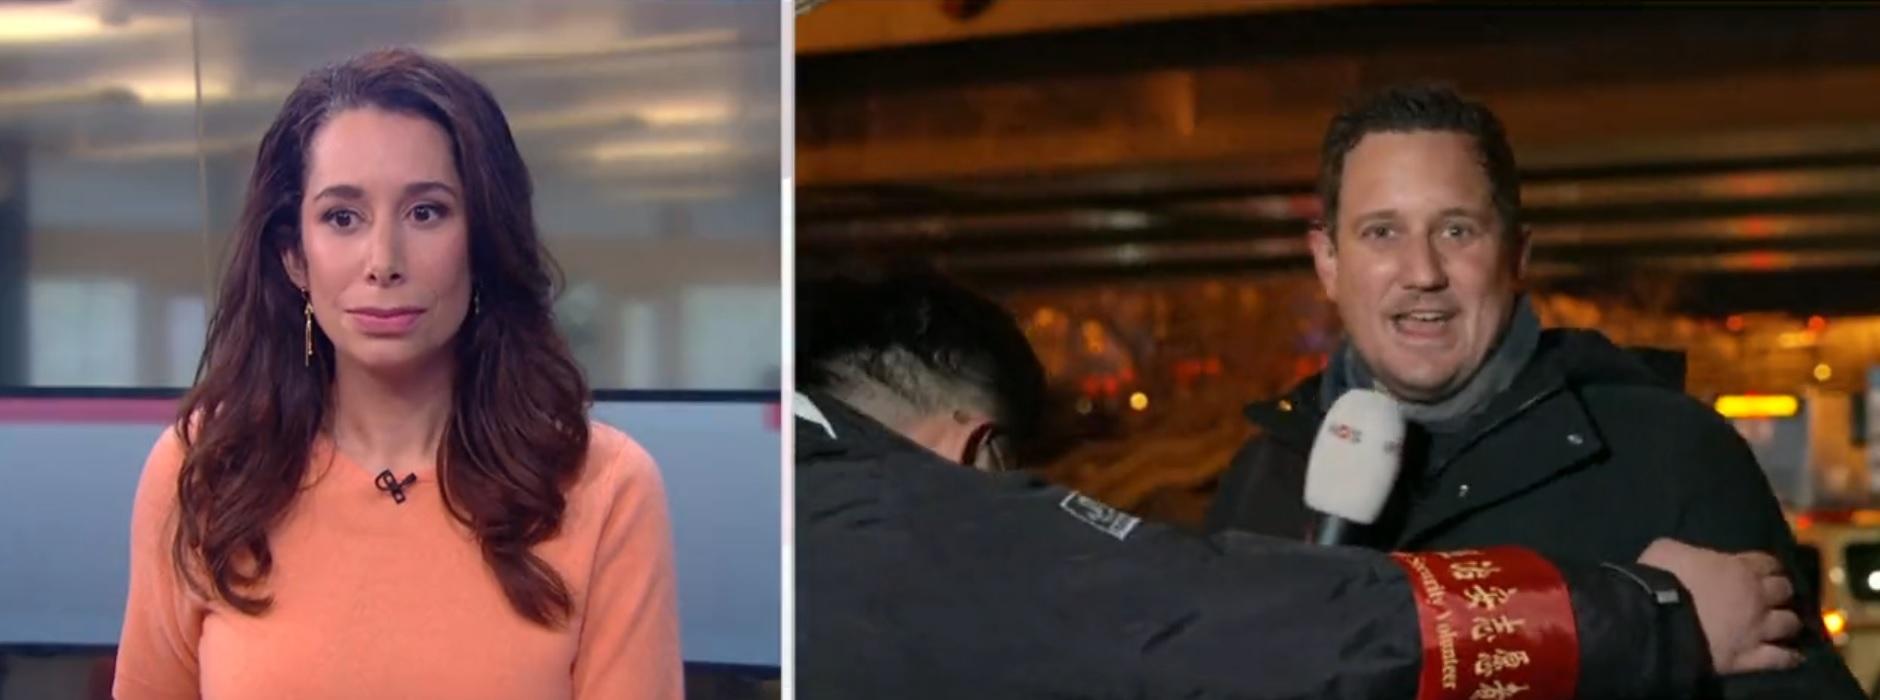 Momentul în care un jurnalist olandez, care transmitea live din Beijing, este luat pe sus pe de un bodyguard chinez: "Asta a devenit o realitate în China" | VIDEO